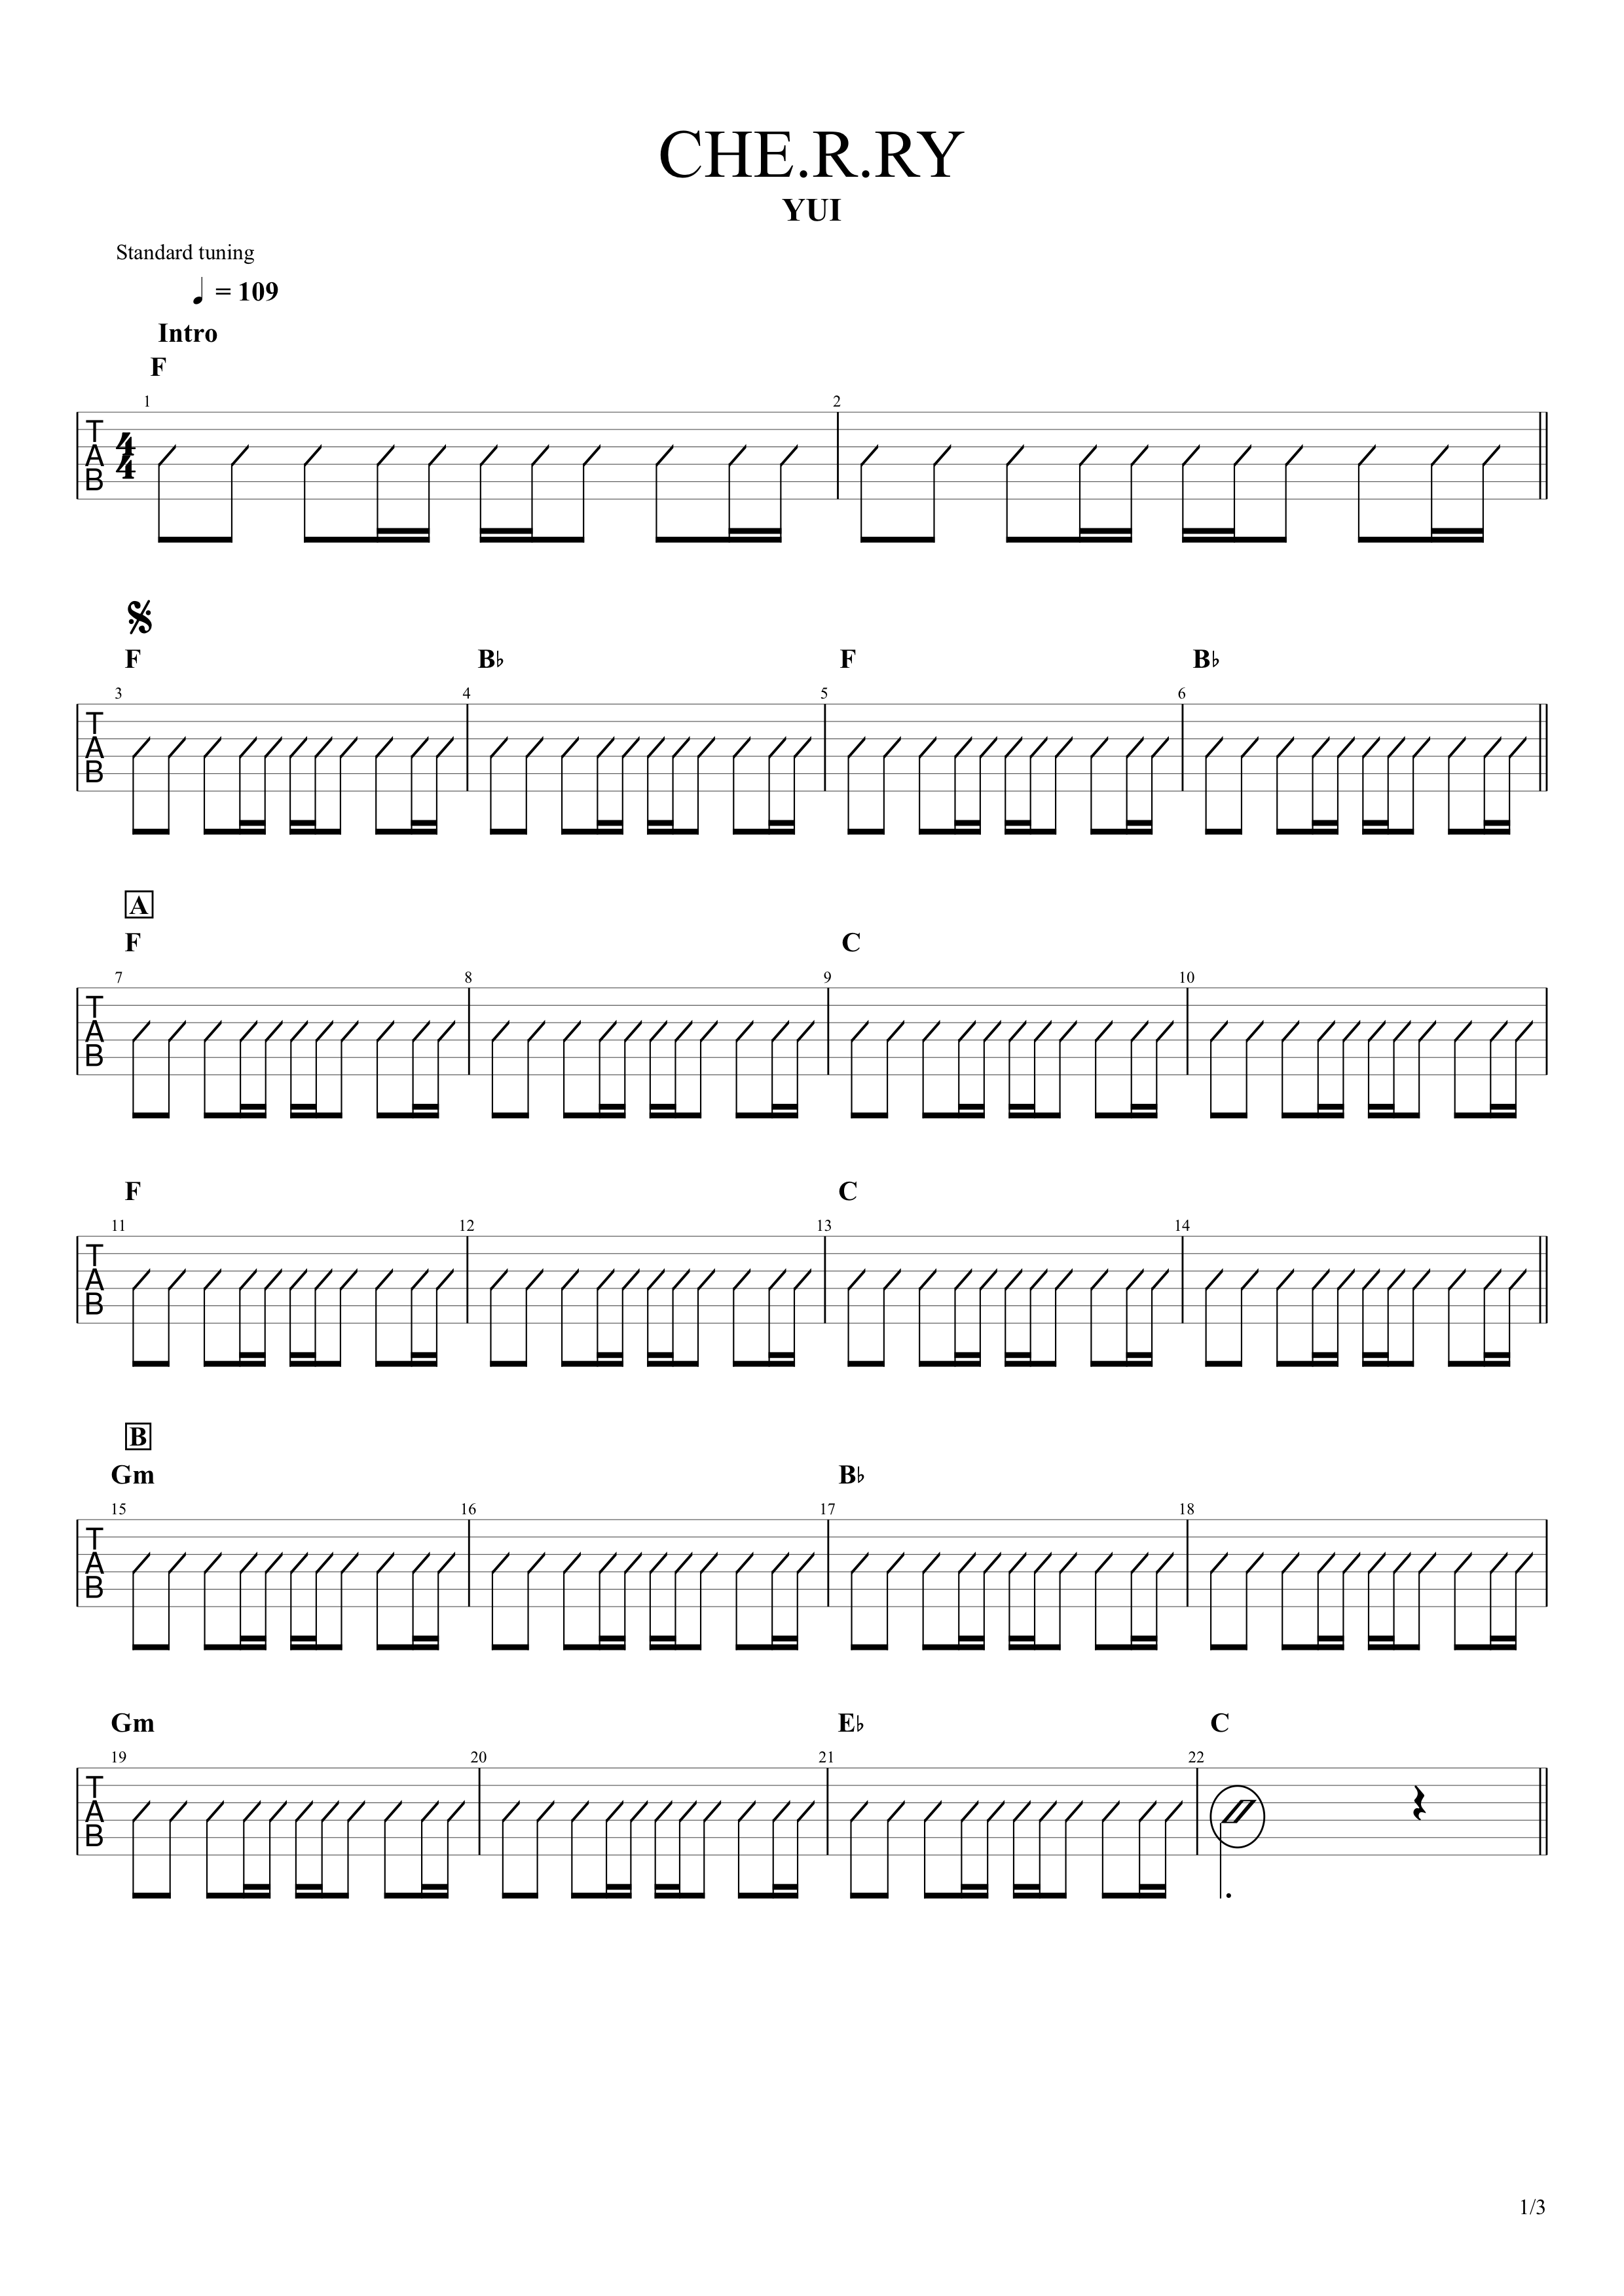 チェリー コード ギター初心者でも簡単コードで弾ける練習曲9選